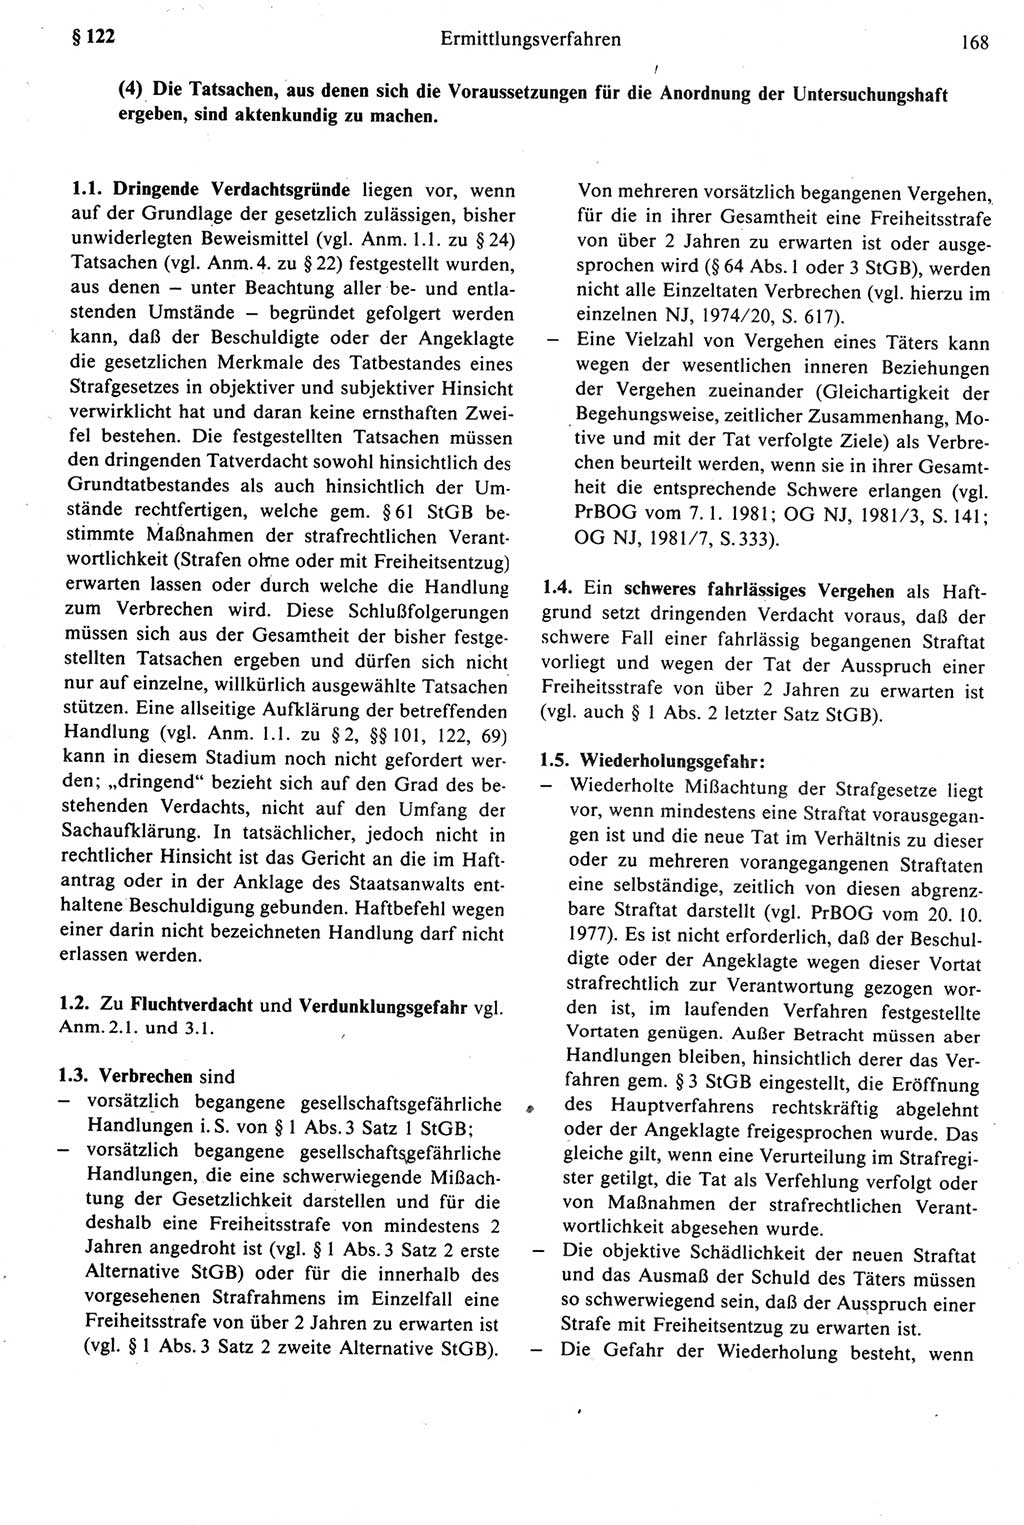 Strafprozeßrecht der DDR [Deutsche Demokratische Republik], Kommentar zur Strafprozeßordnung (StPO) 1987, Seite 168 (Strafprozeßr. DDR Komm. StPO 1987, S. 168)